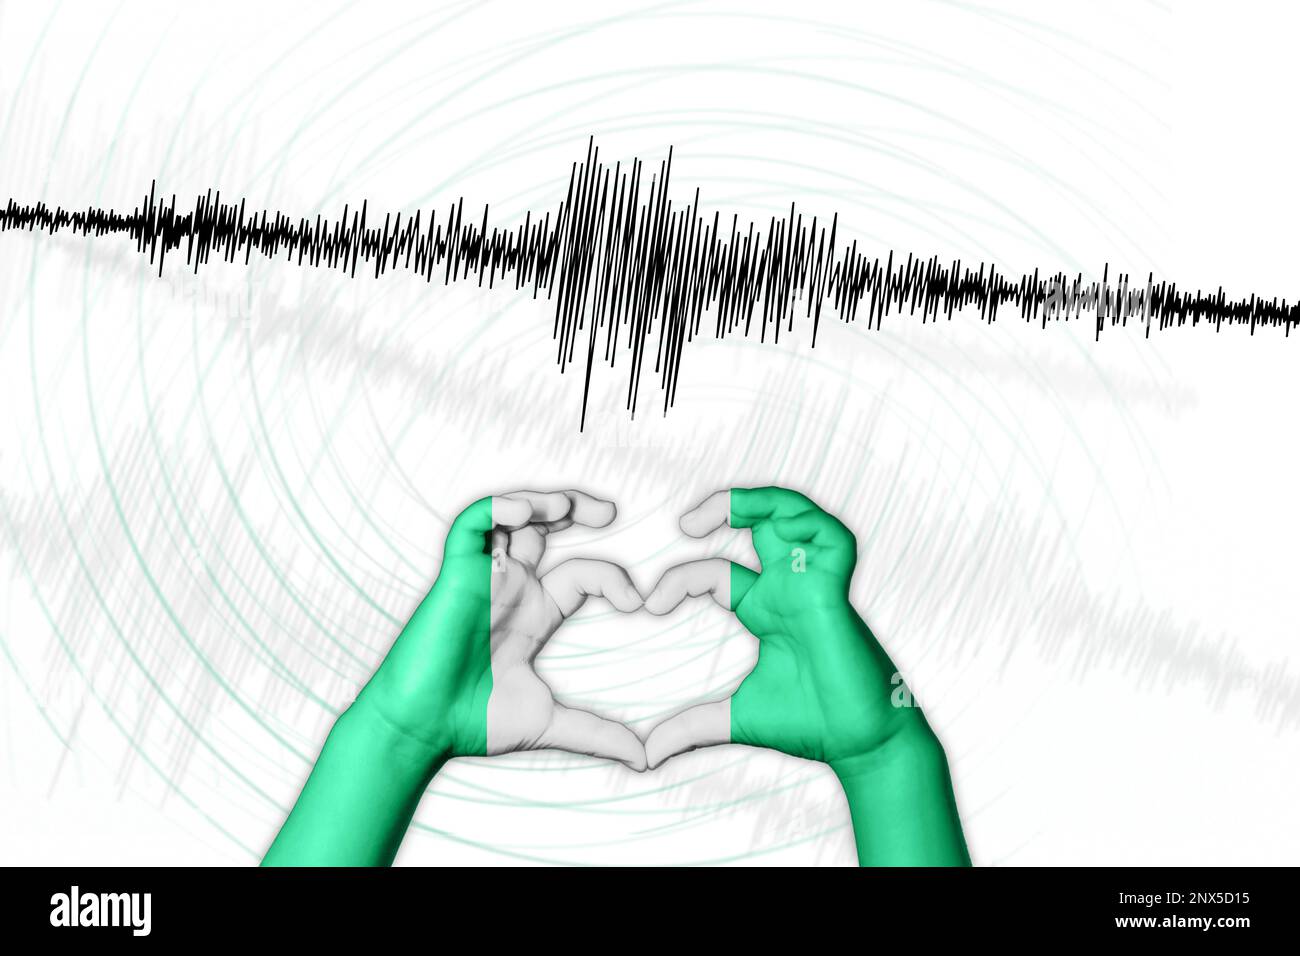 Erdbeben Nigeria Symbol der Heart Richter Scale Stockfoto